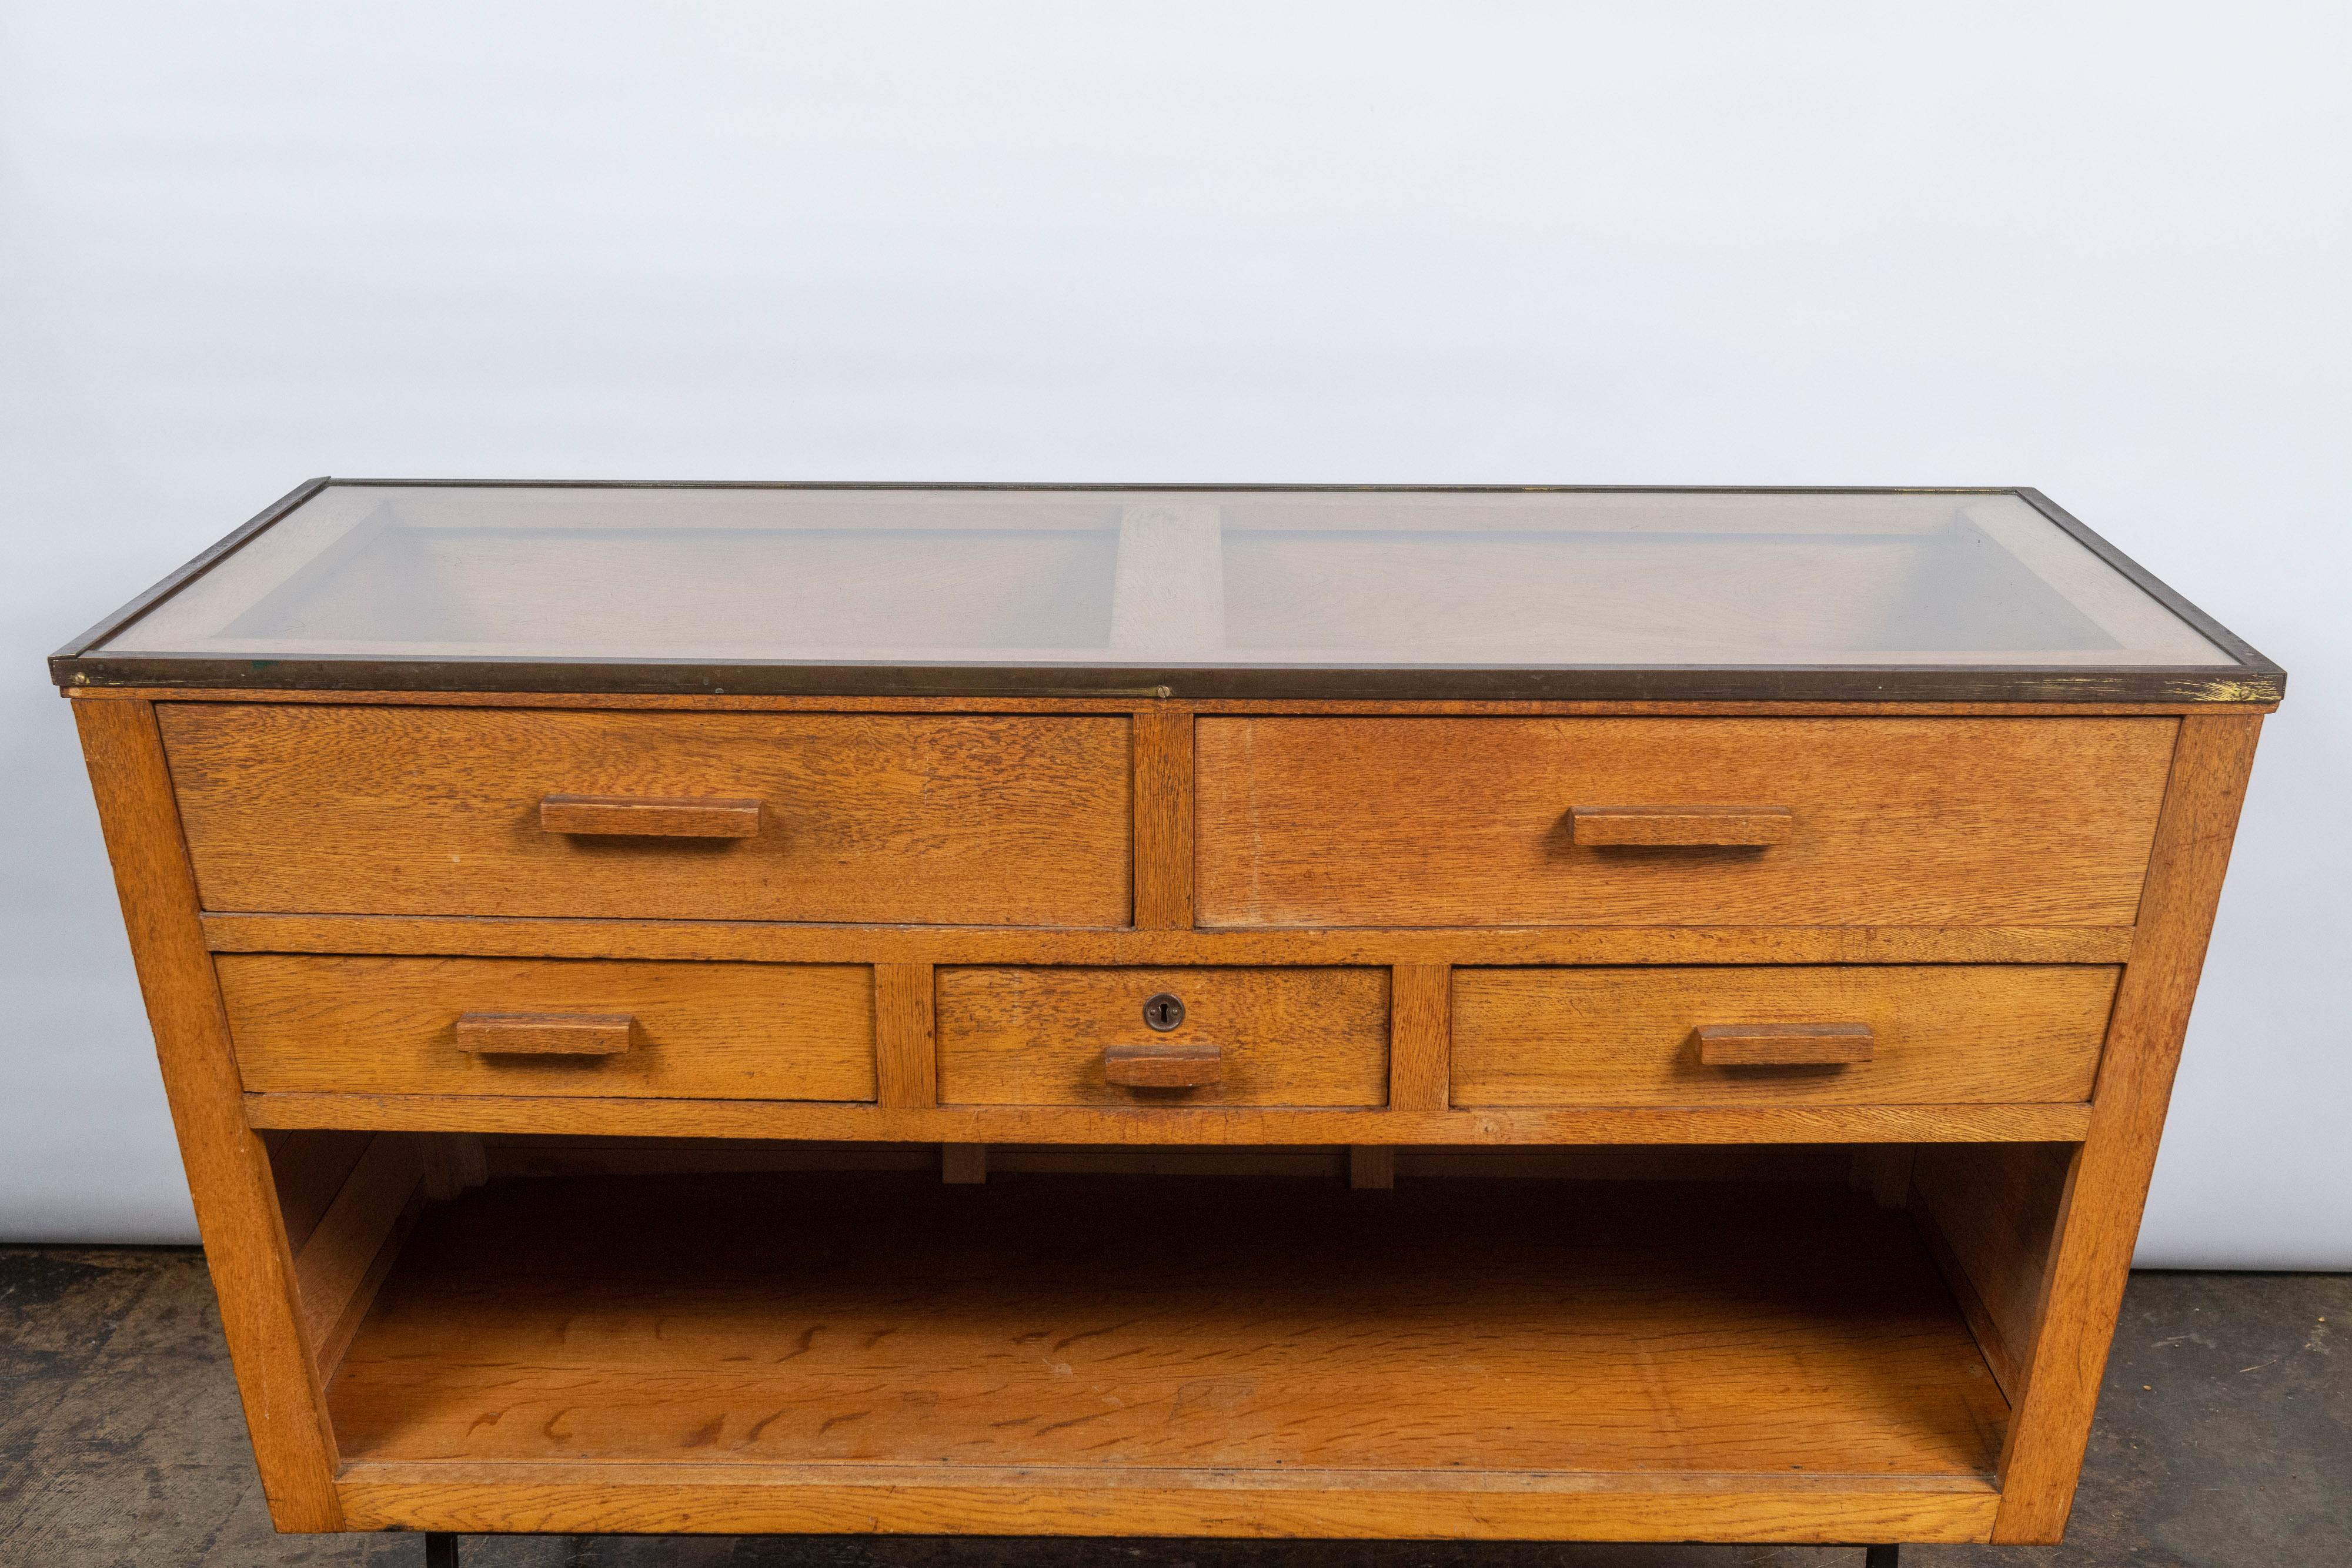 Ce meuble Art of Vintage en chêne massif a une forme trapézoïdale, avec deux grands tiroirs sous un plateau en verre garni de laiton, trois tiroirs plus petits en dessous, et un grand espace de rangement en dessous, qui repose sur des pieds en